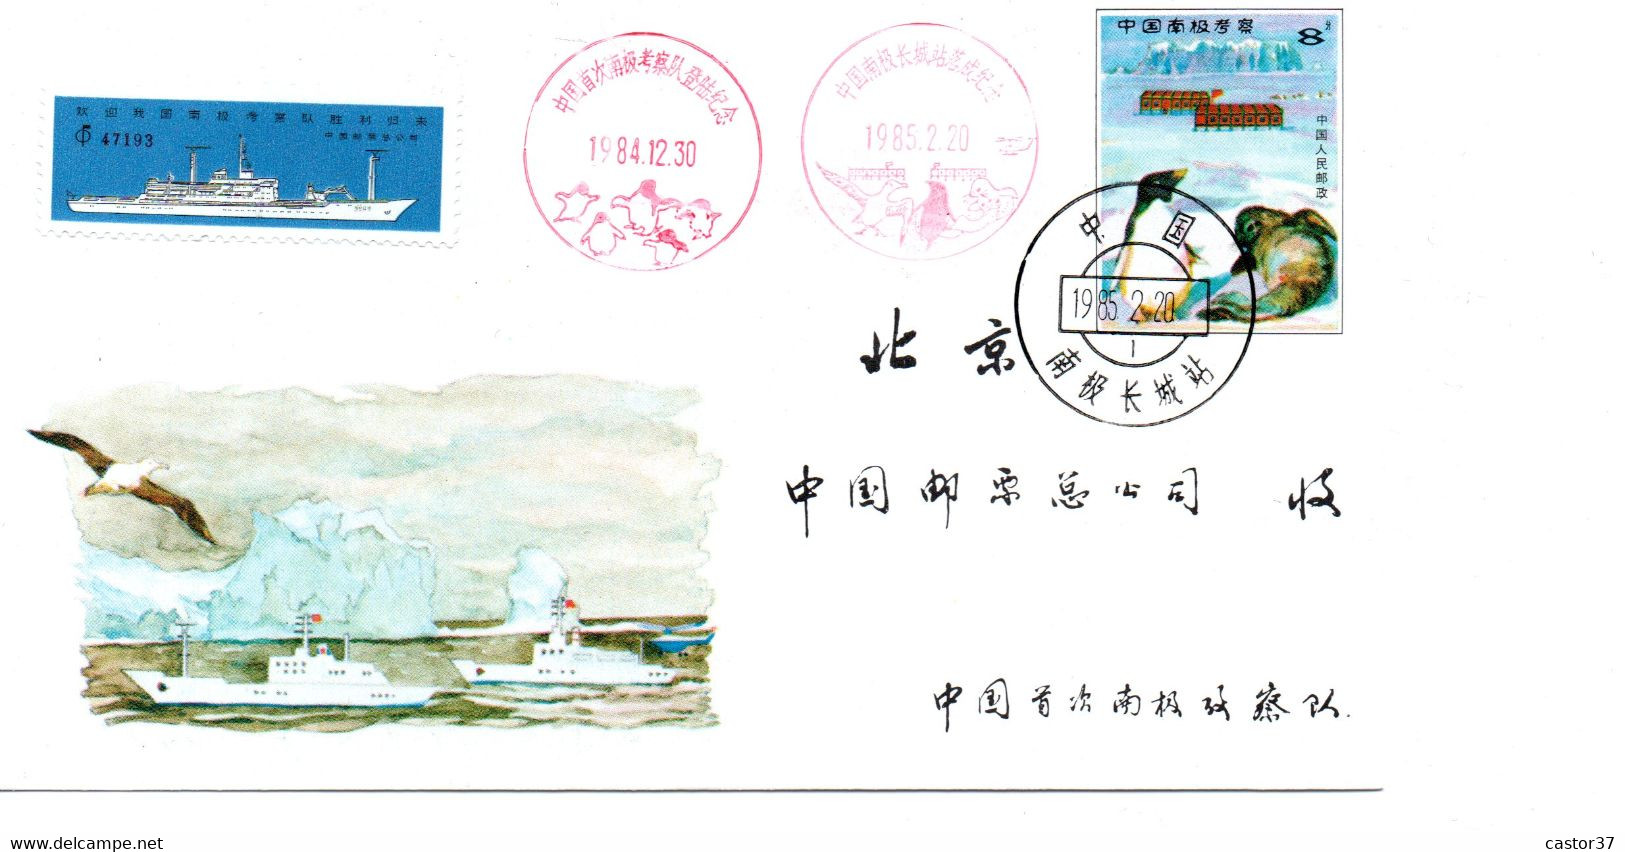 Chine RPC Livret Expédition En Antarctique JF.4 (1-1) - Otros Medios De Transporte